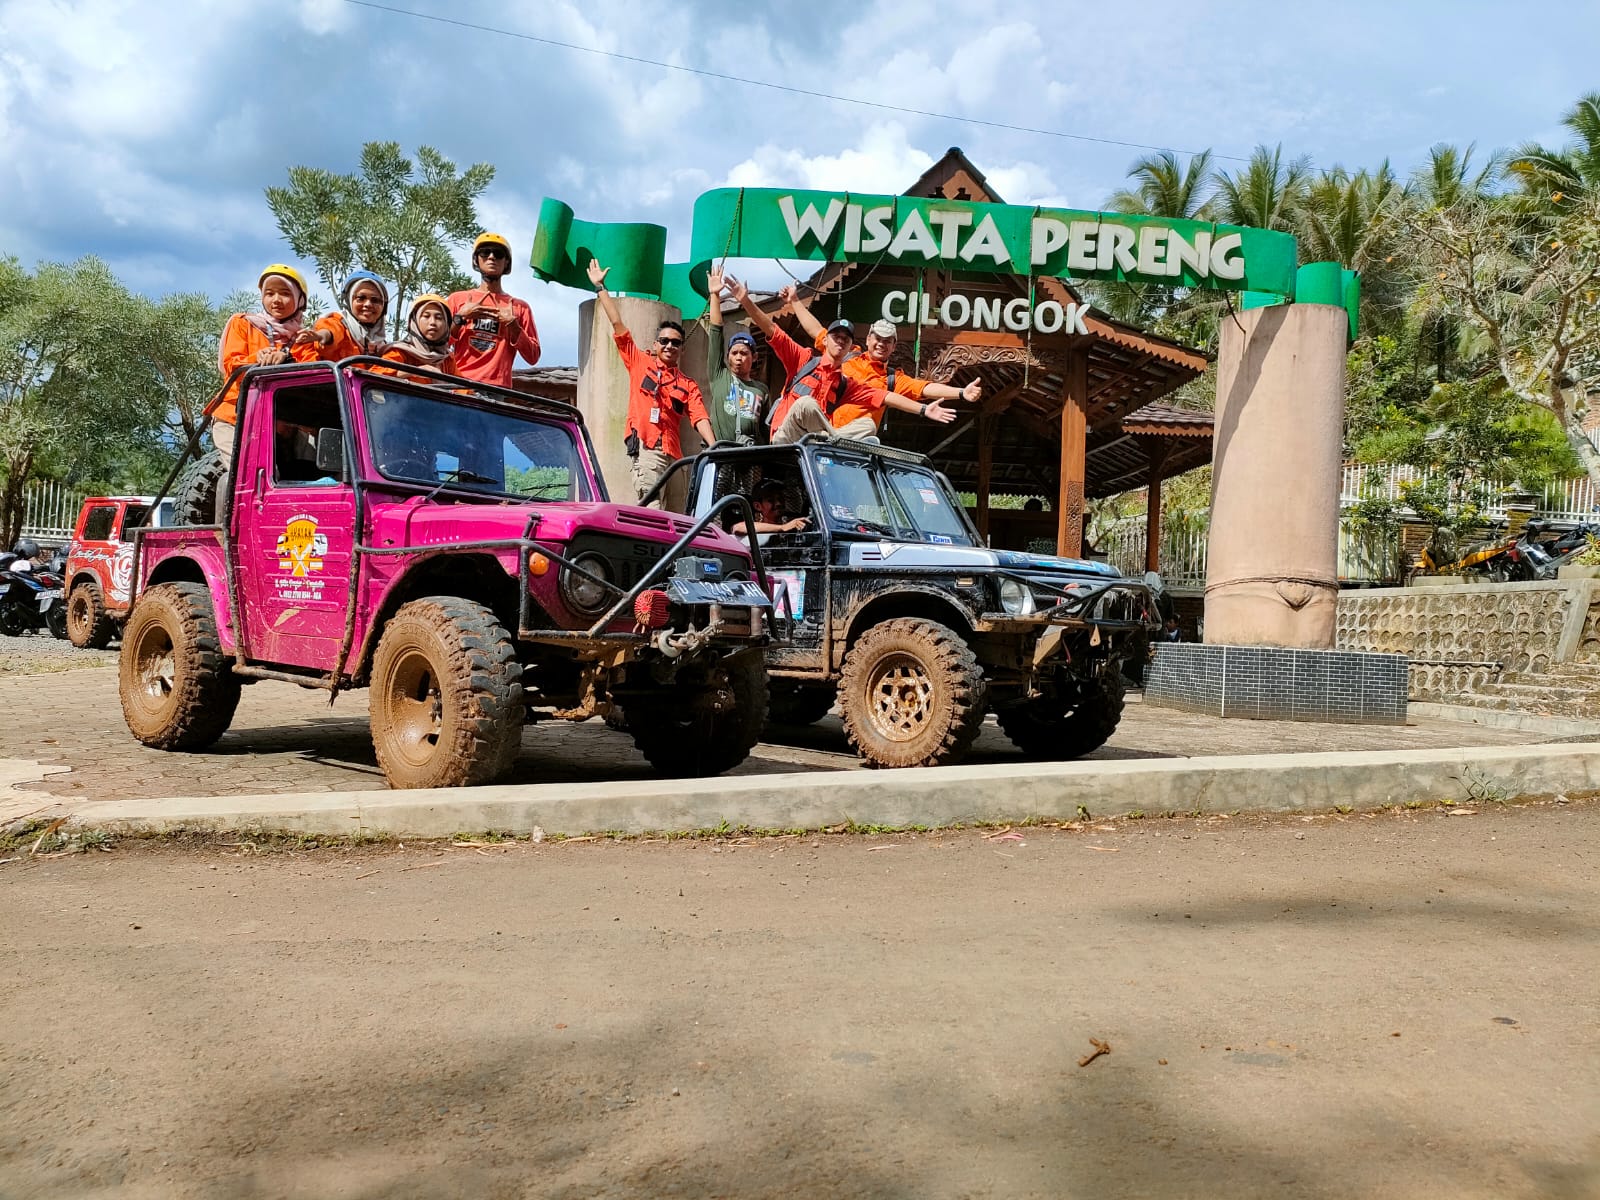 Wisata Jeep Digagas untuk Hubungkan Antar Desa Wisata di Cilongok